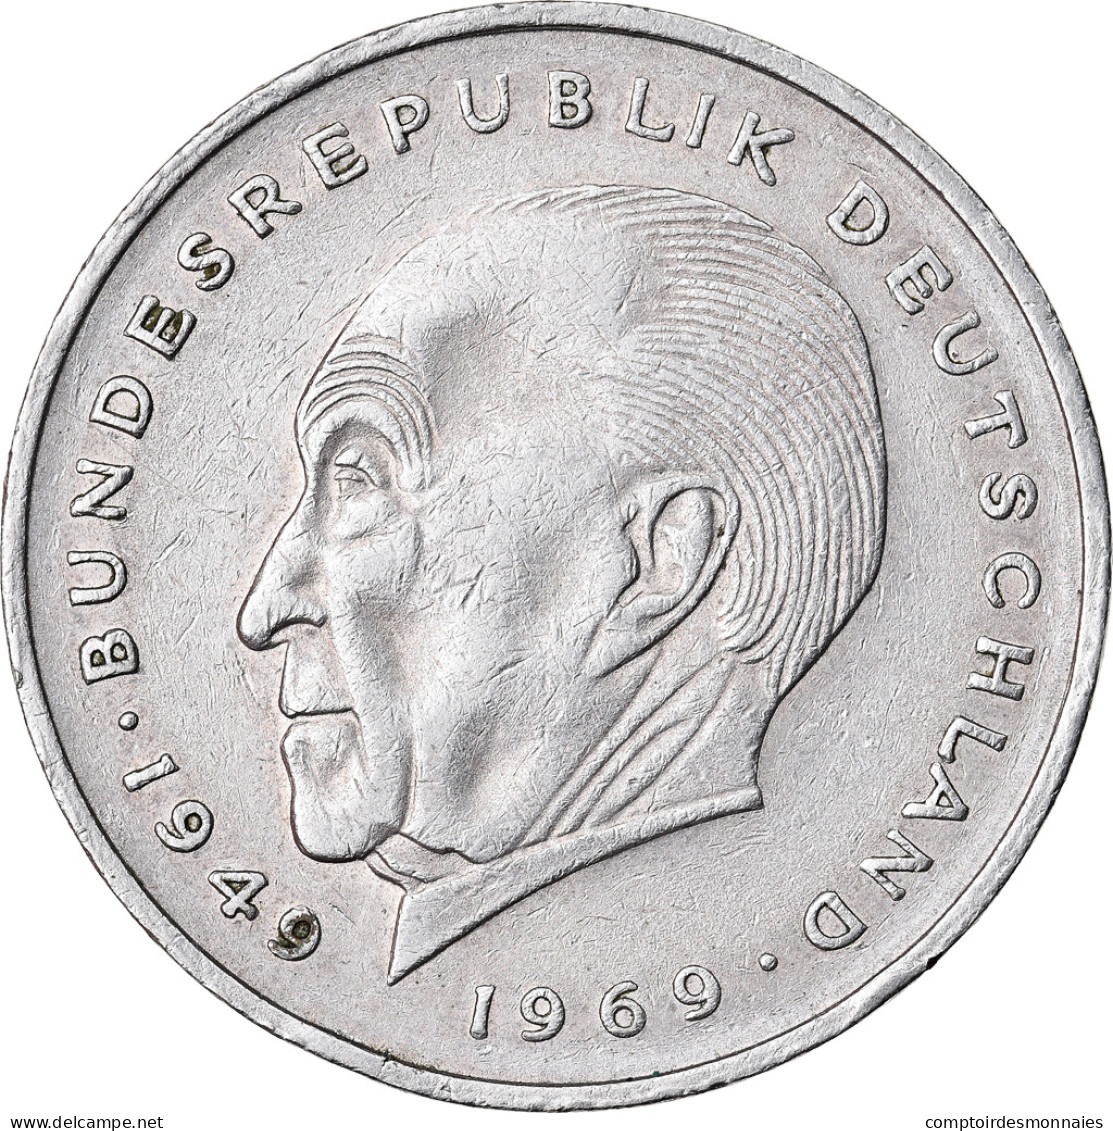 Monnaie, République Fédérale Allemande, 2 Mark, 1970, Stuttgart, TTB - 2 Marcos